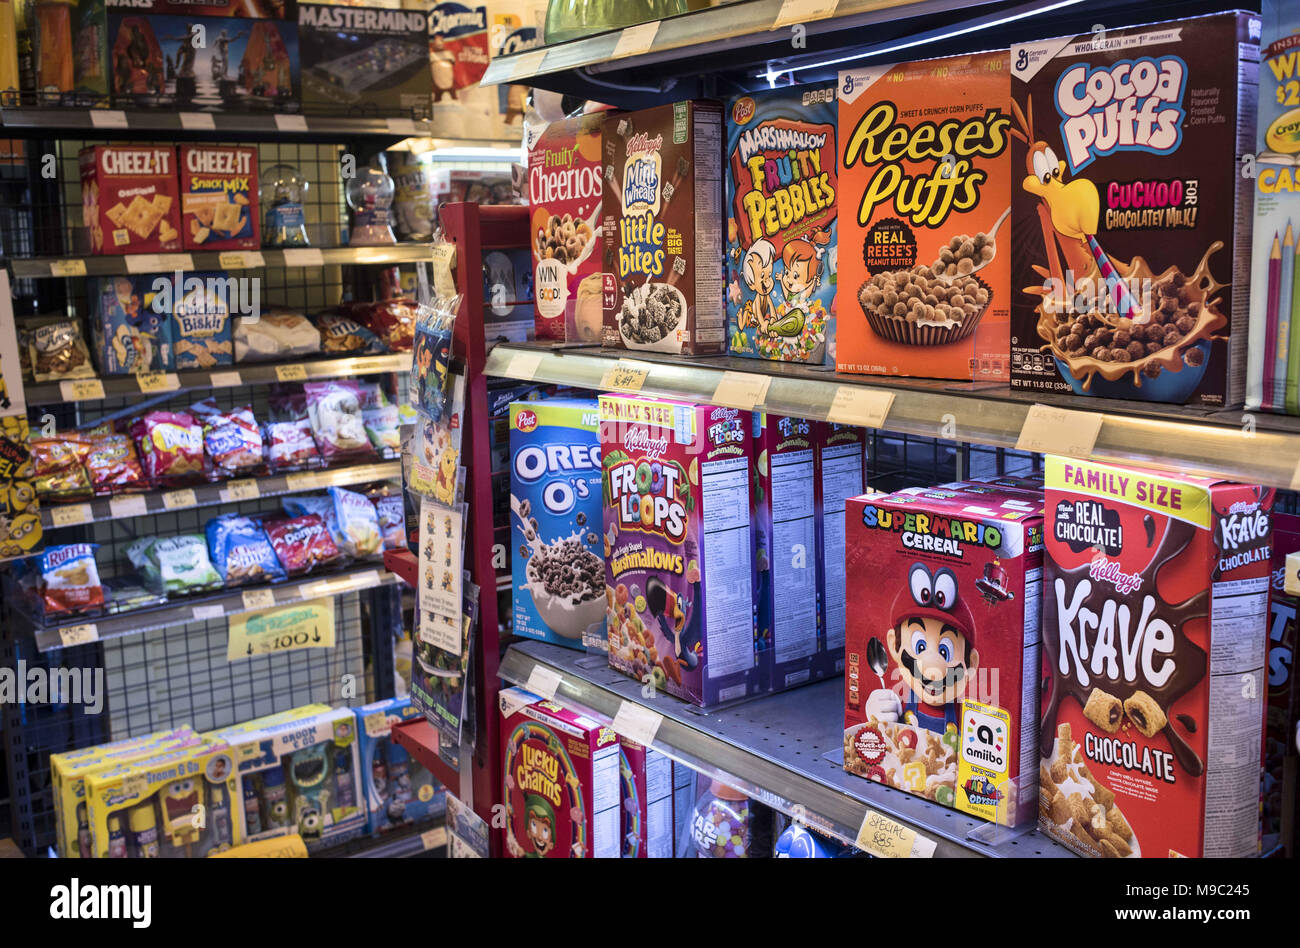 Distribuidor oficial de cereales americanos en España